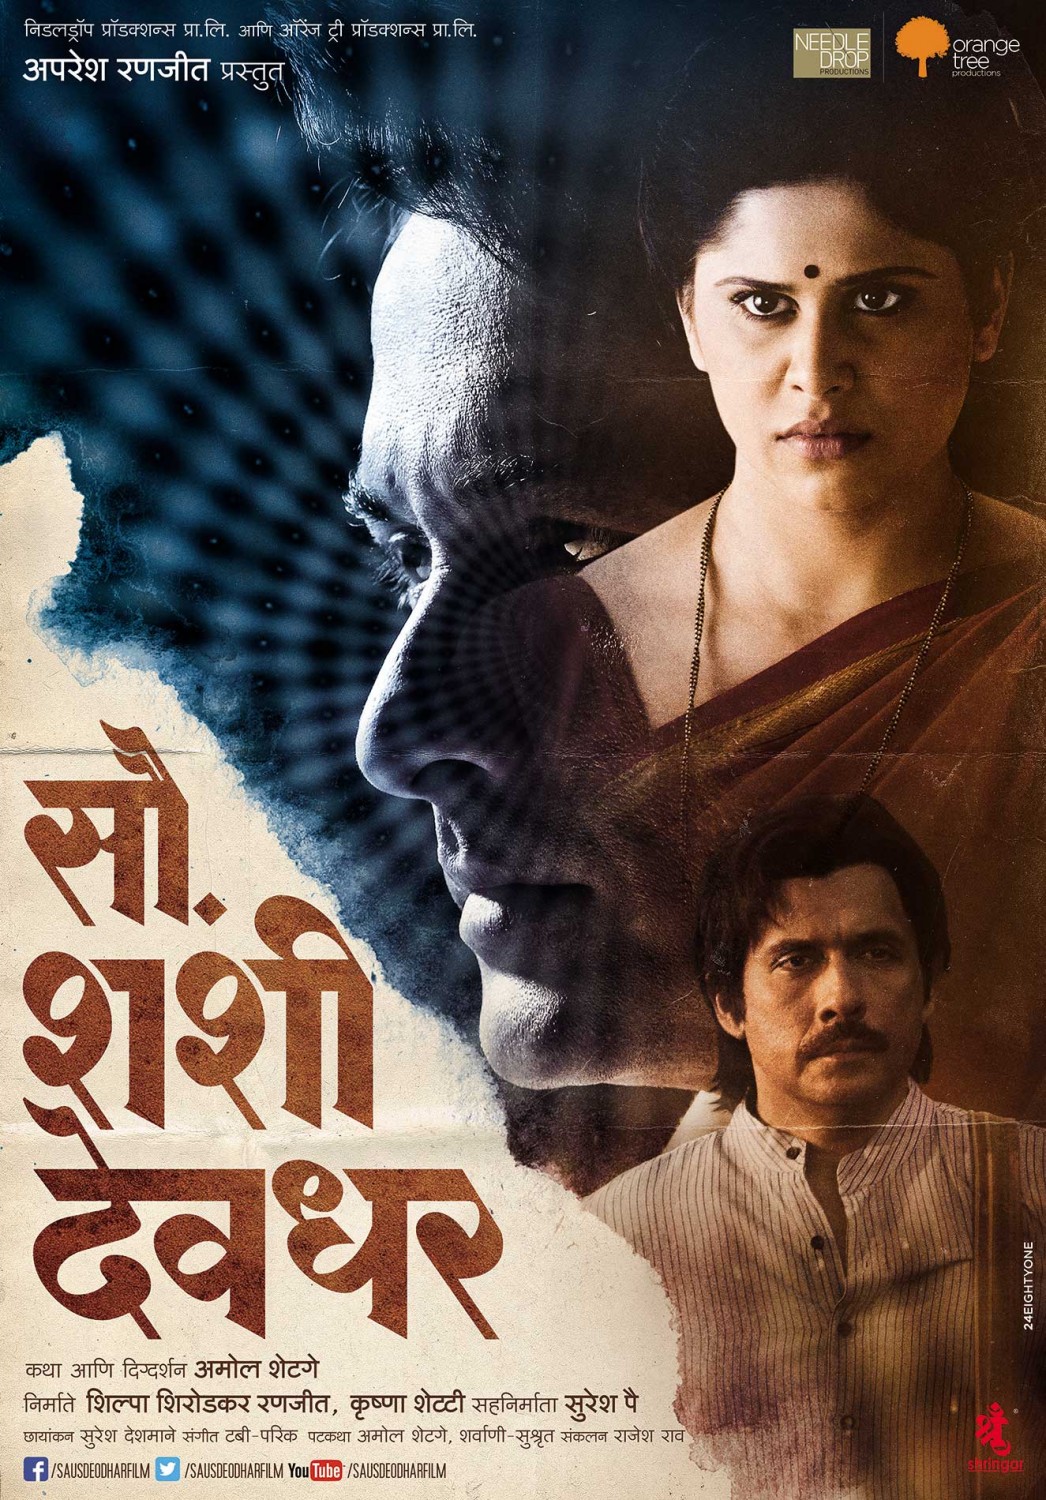 Extra Large Movie Poster Image for Sau. Shashi Deodhar (#5 of 7)